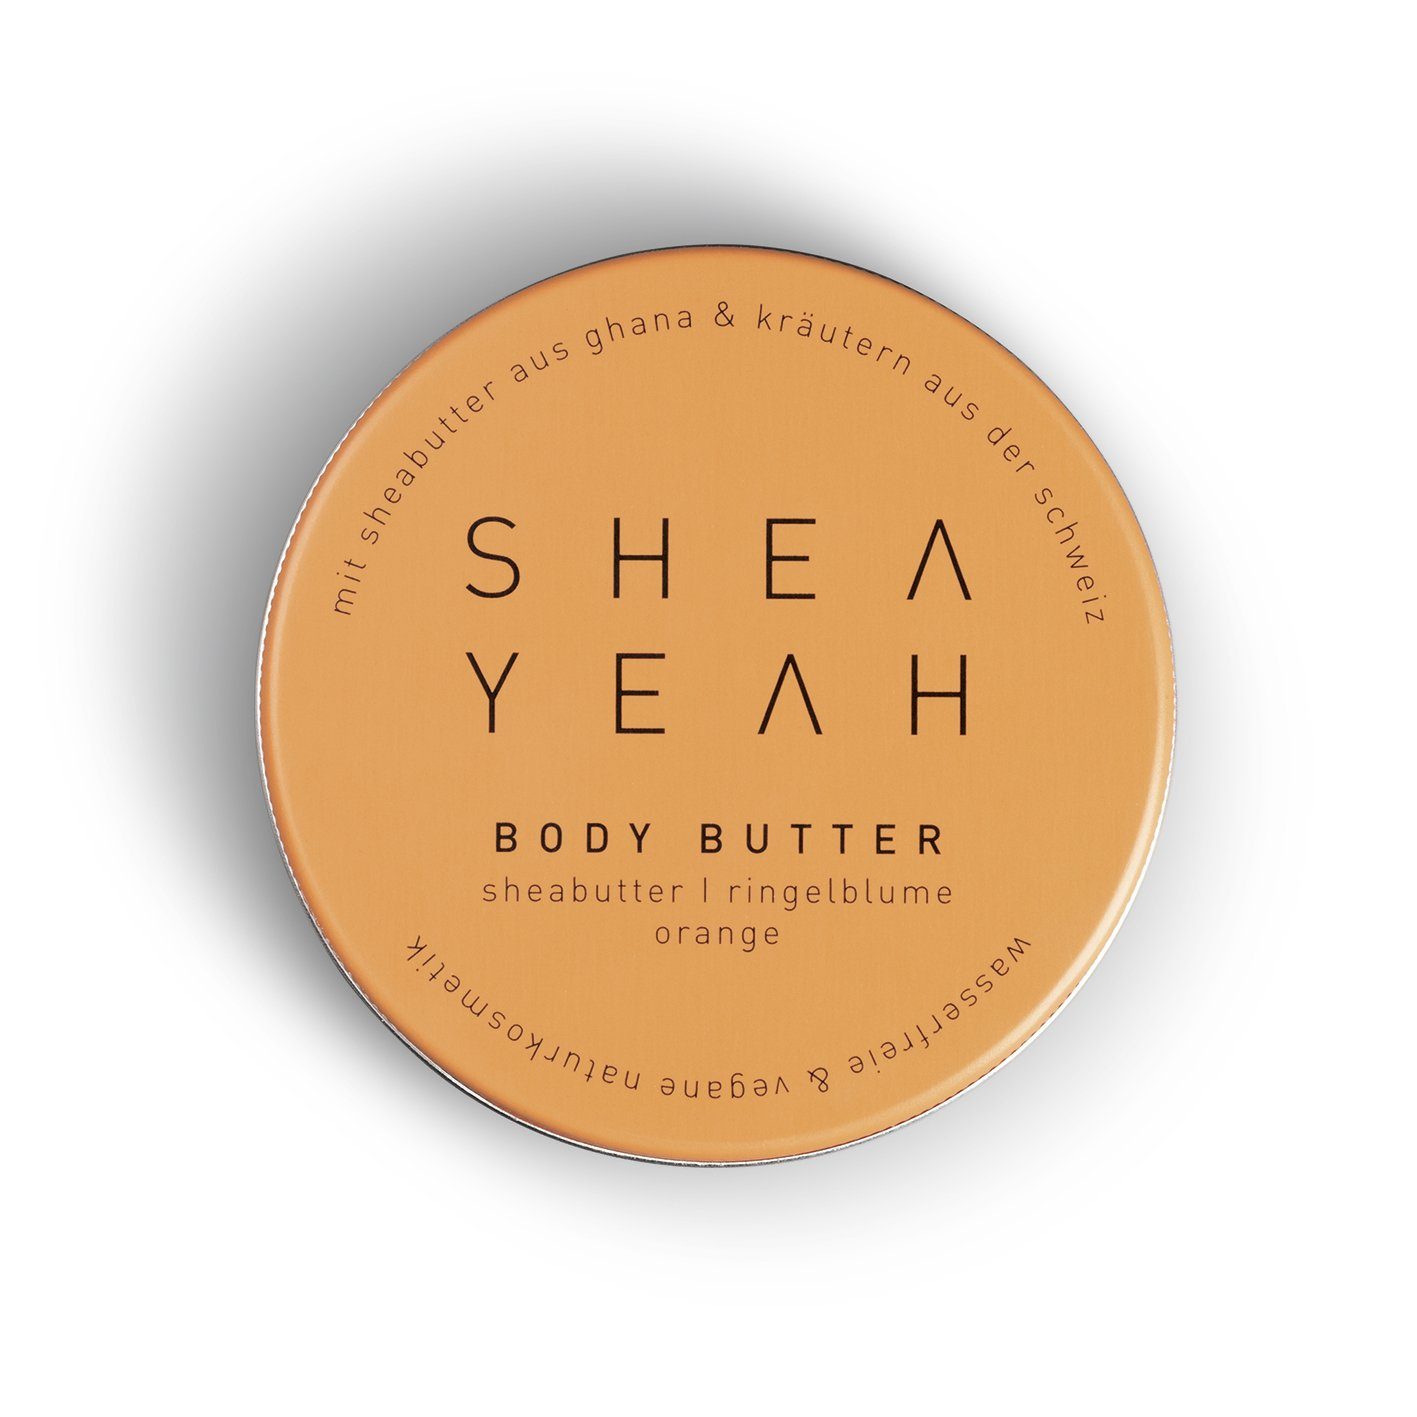 SHEA YEAH Butter Körperlotion Body Yeah Bodylotion orange, Shea 90g